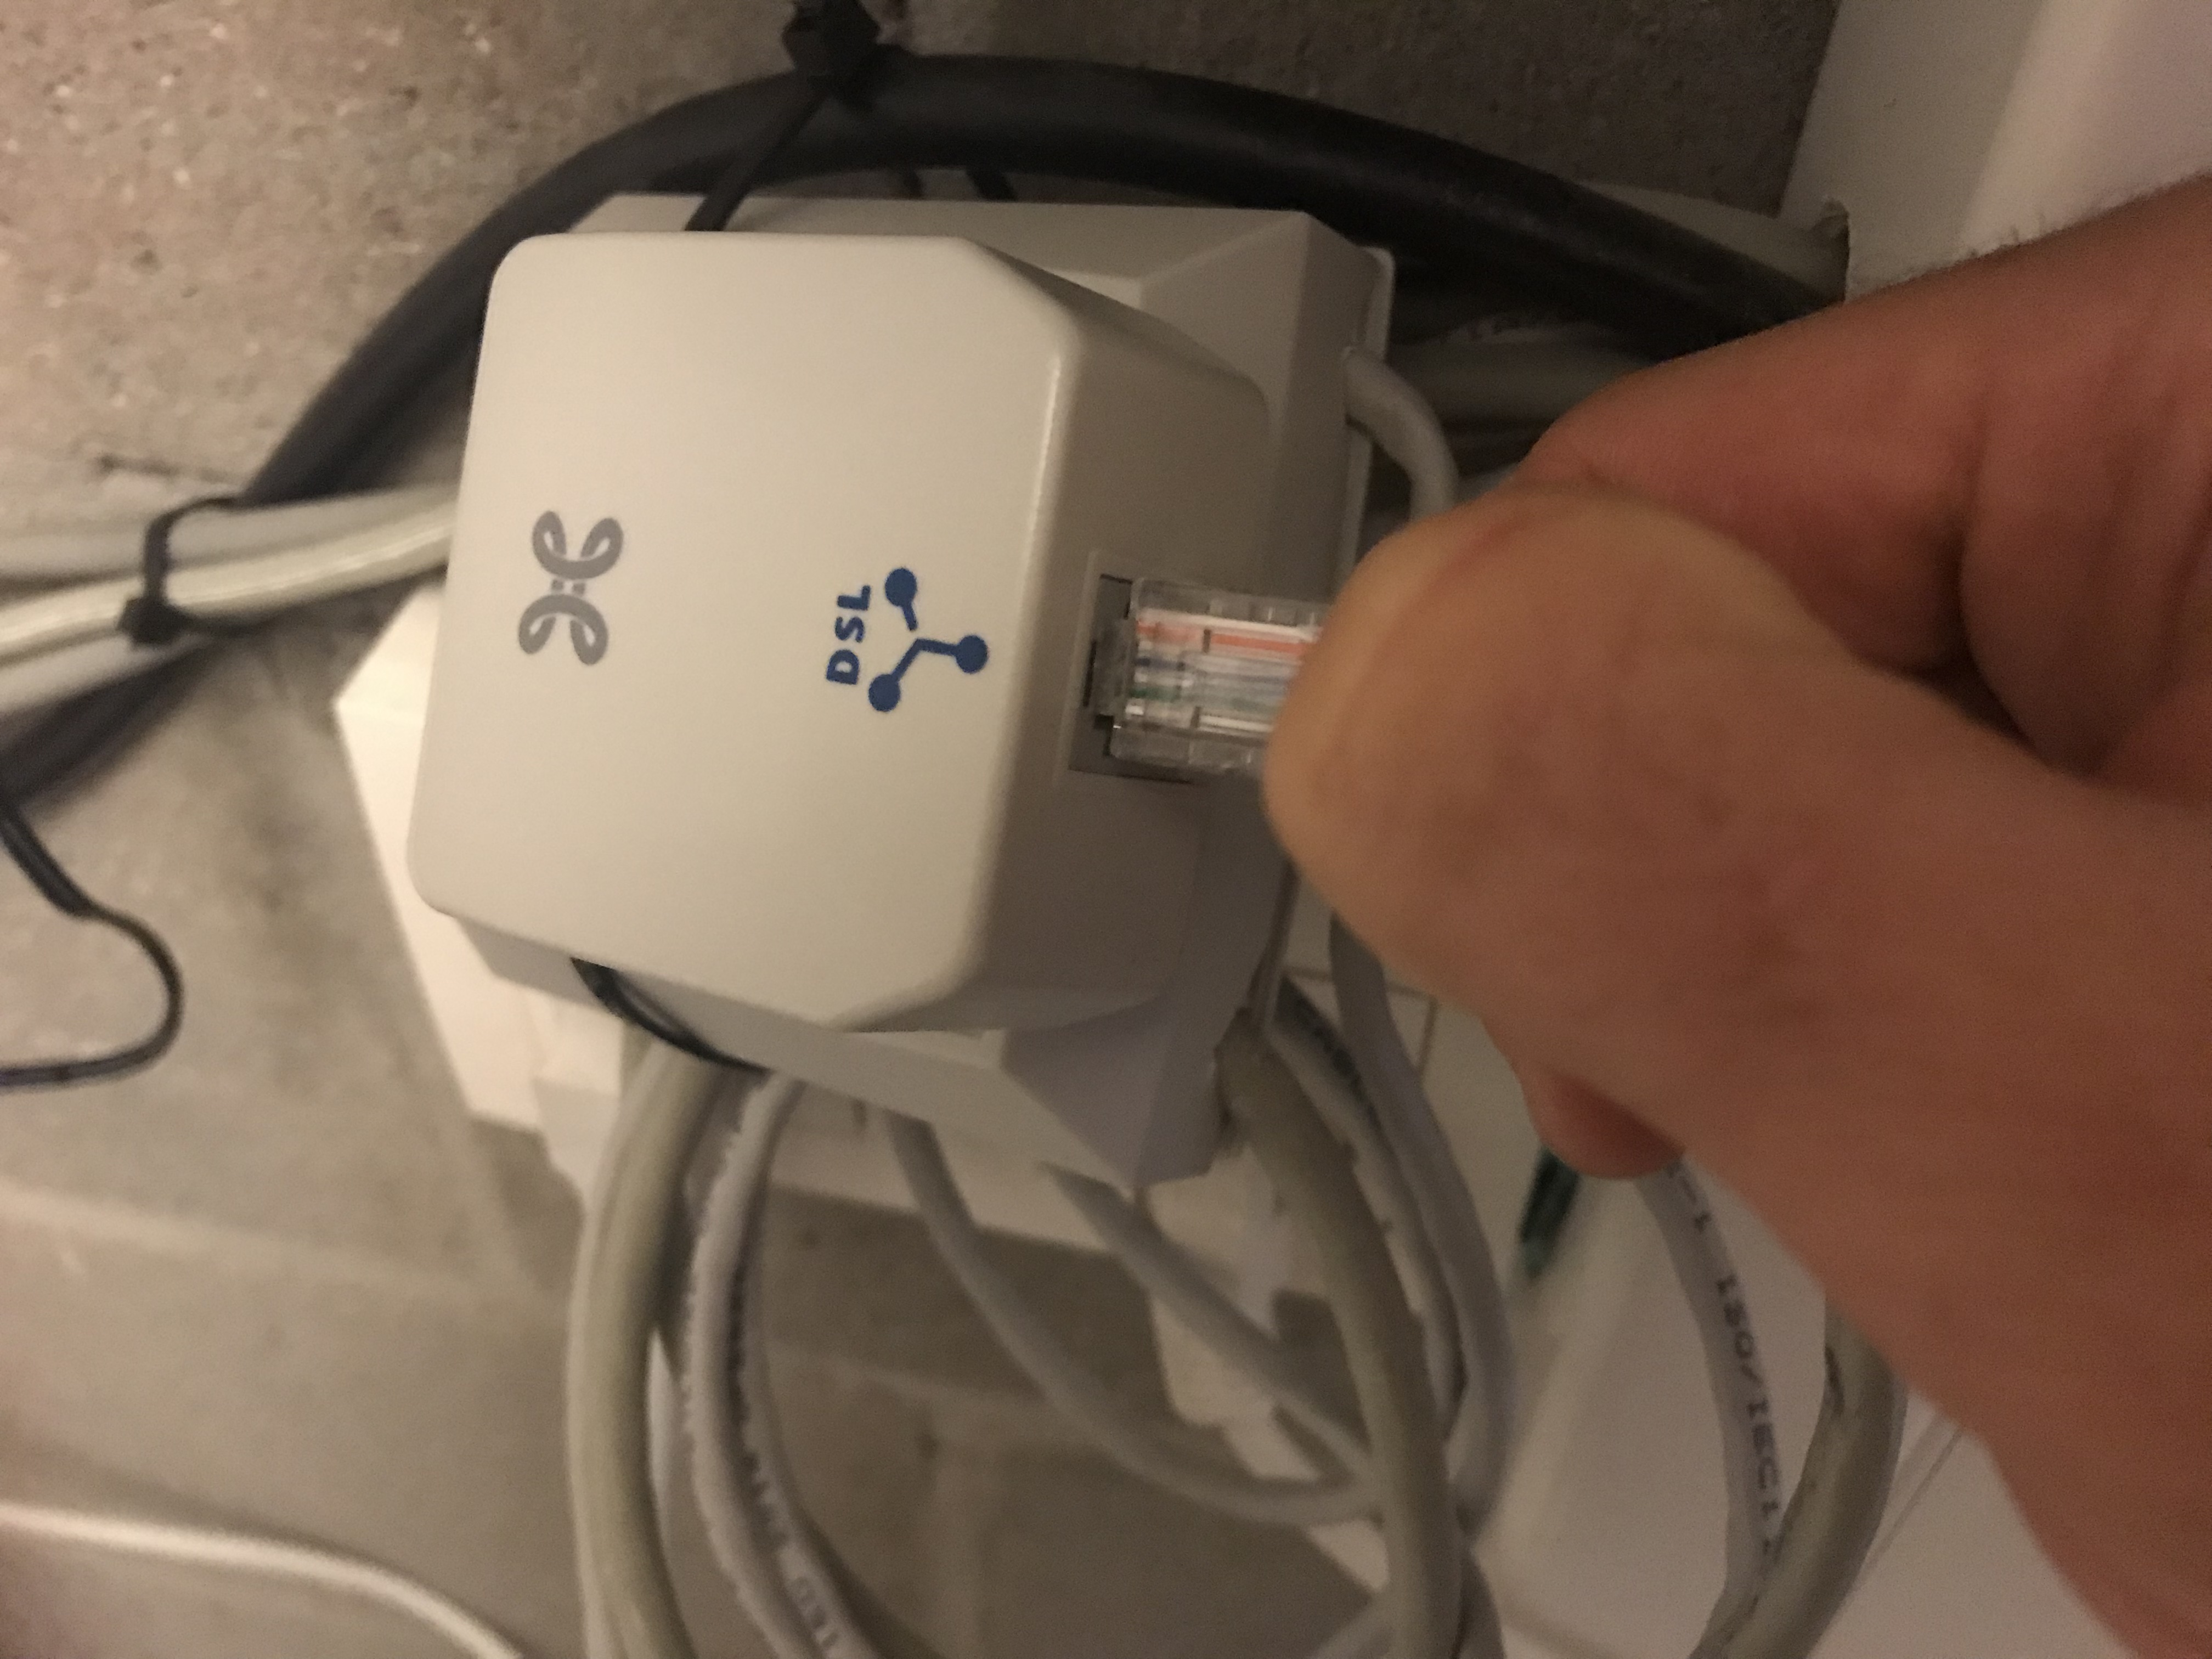 Baars Plicht uniek Ethernet aansluiting in huis werkt niet - De Netweters